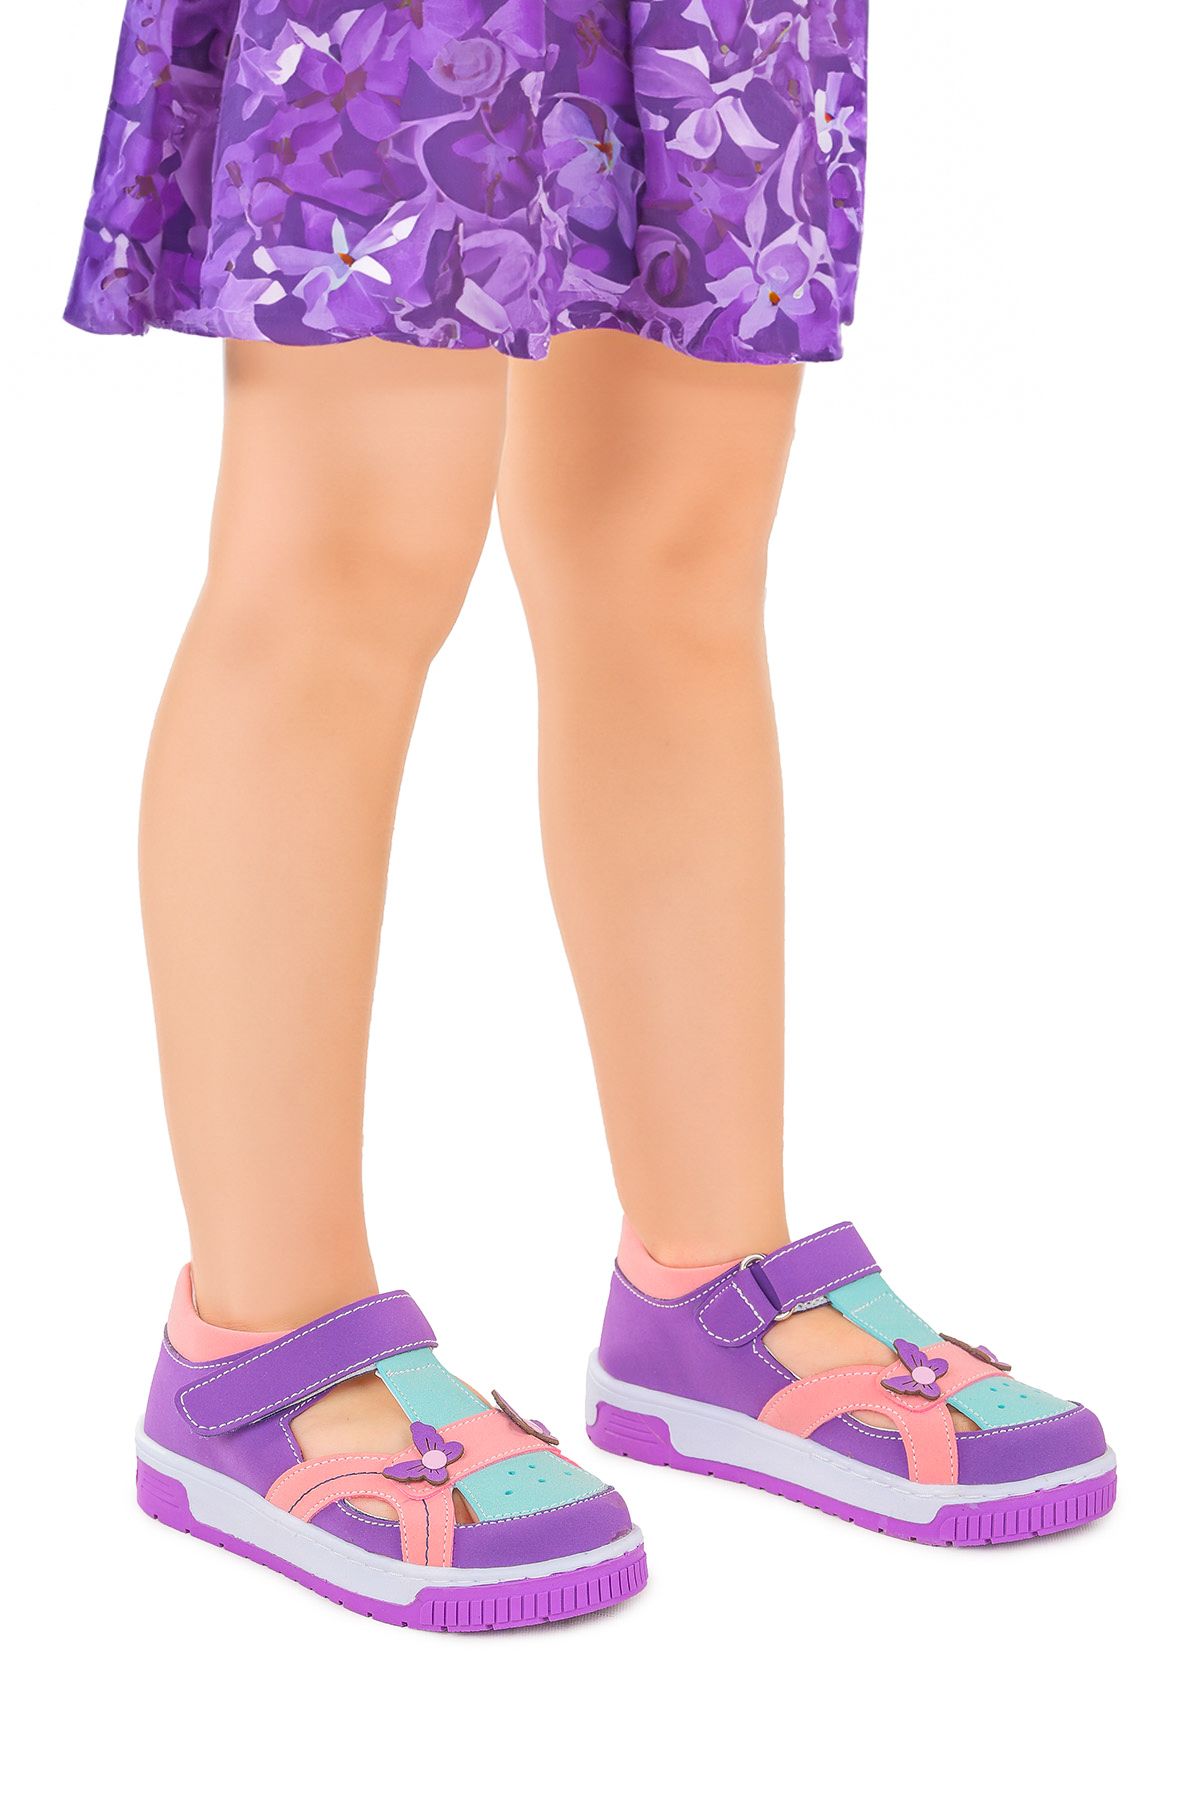 Kiko Kids Kids Kız Çocuk Günlük Ayakkabı Arz 2325